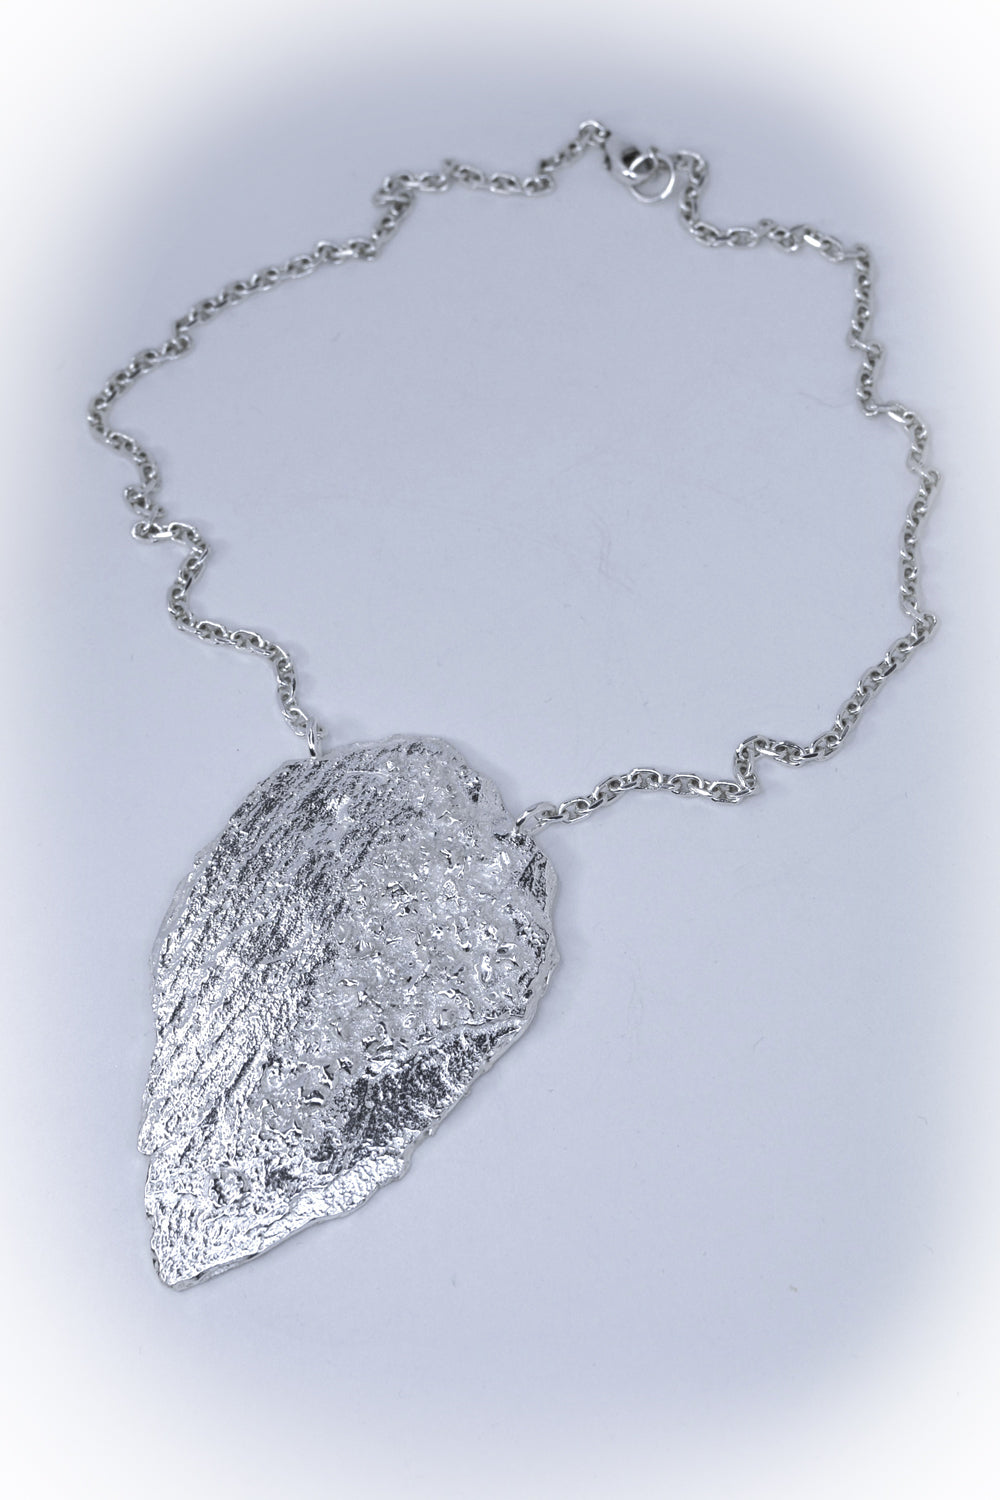 Flint large necklace in silver by Annika Burman